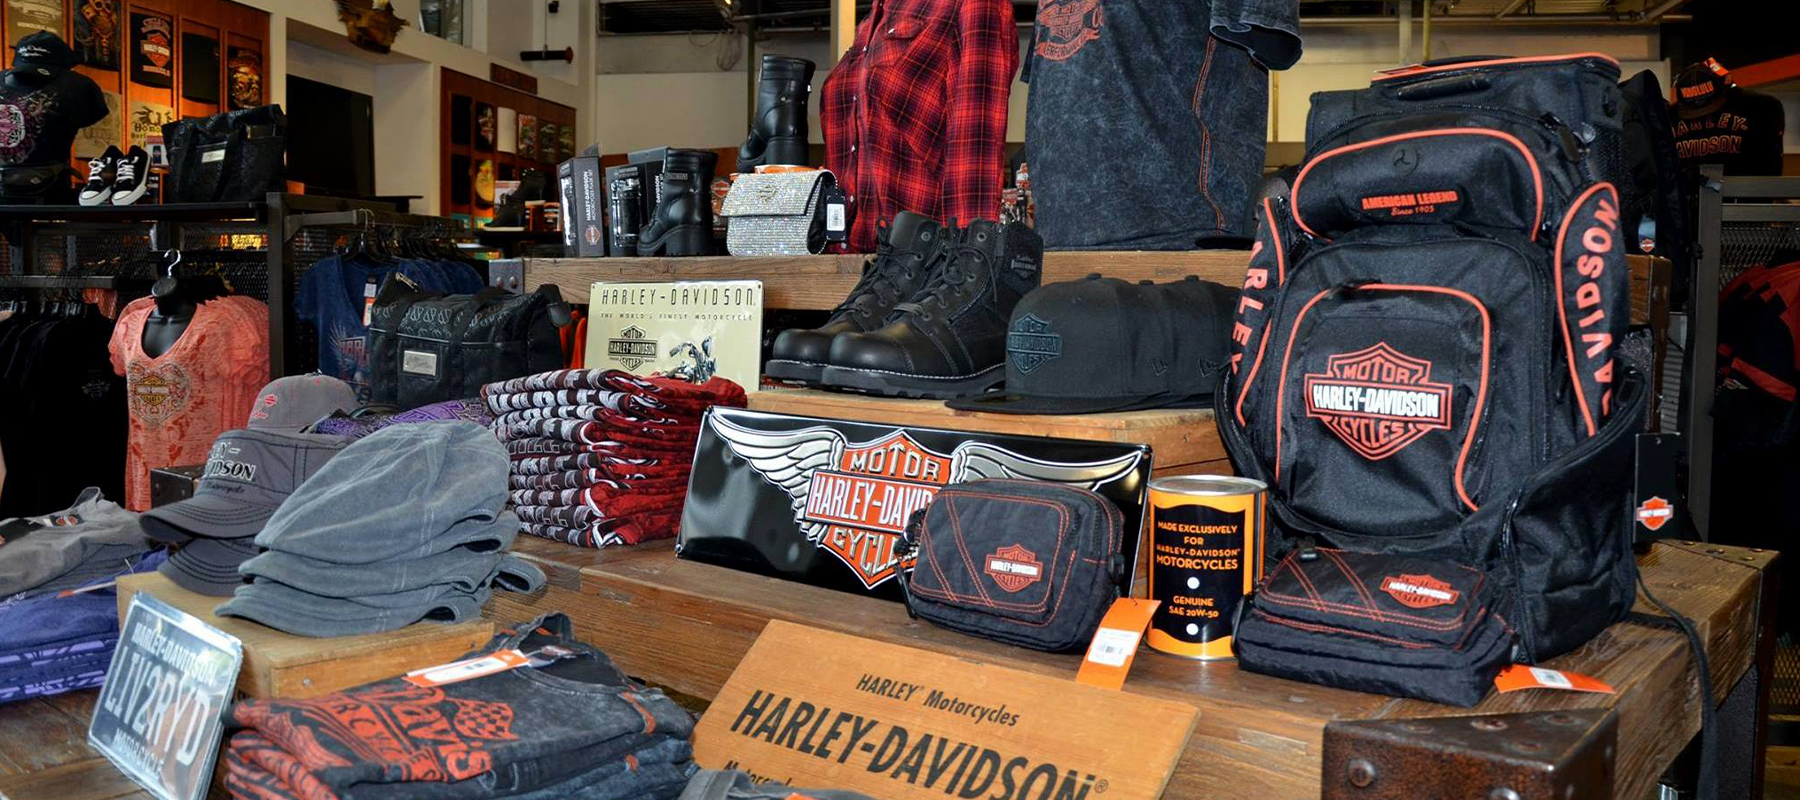 Harley-Davidson Women's Legend Collection Leather Shoulder Bag